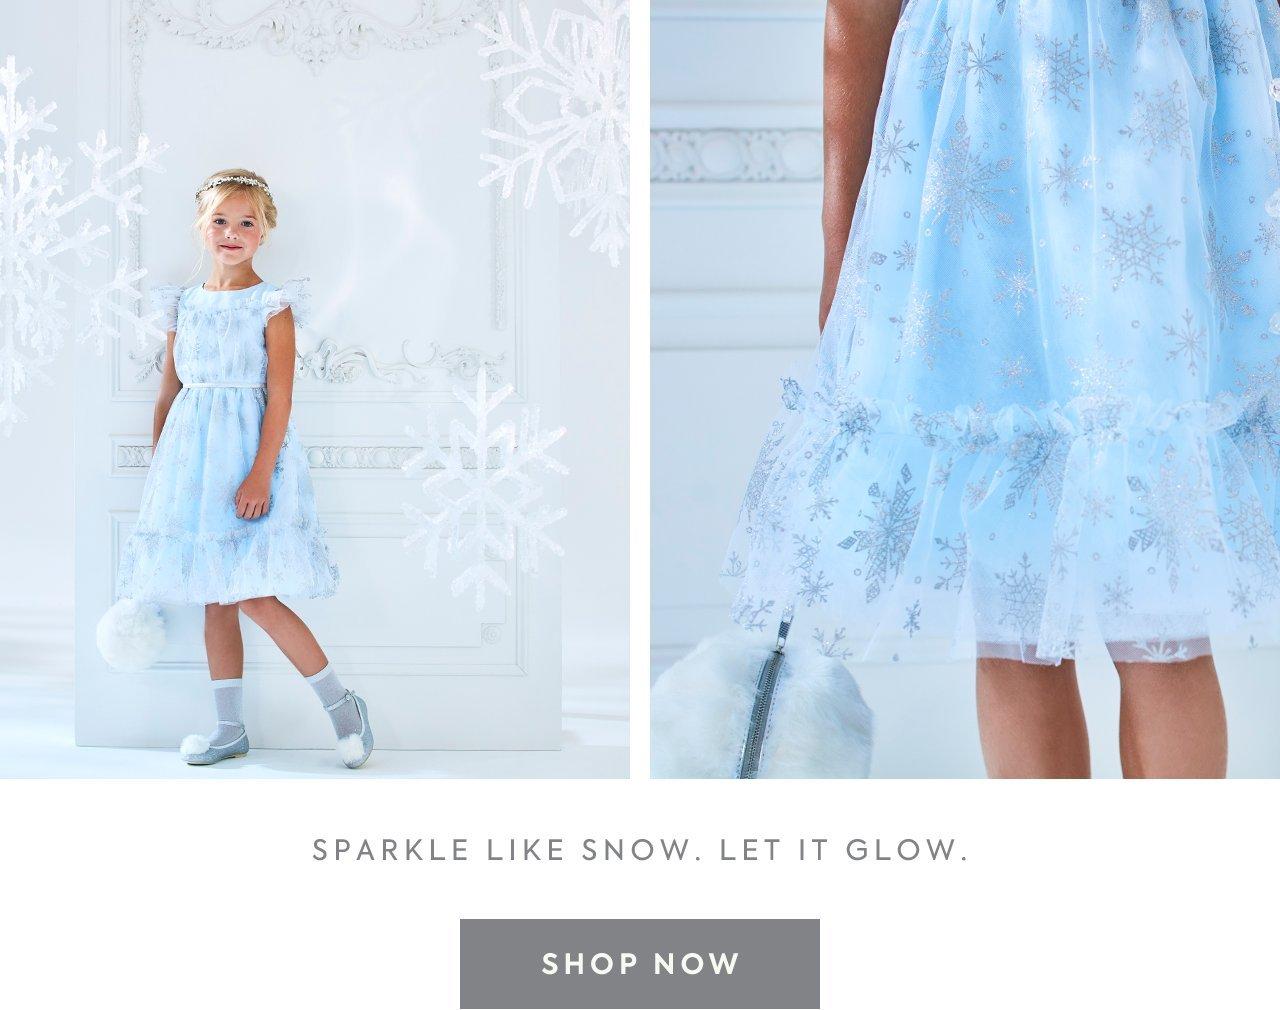 Sparkle like snow. Let it glow. Shop now.